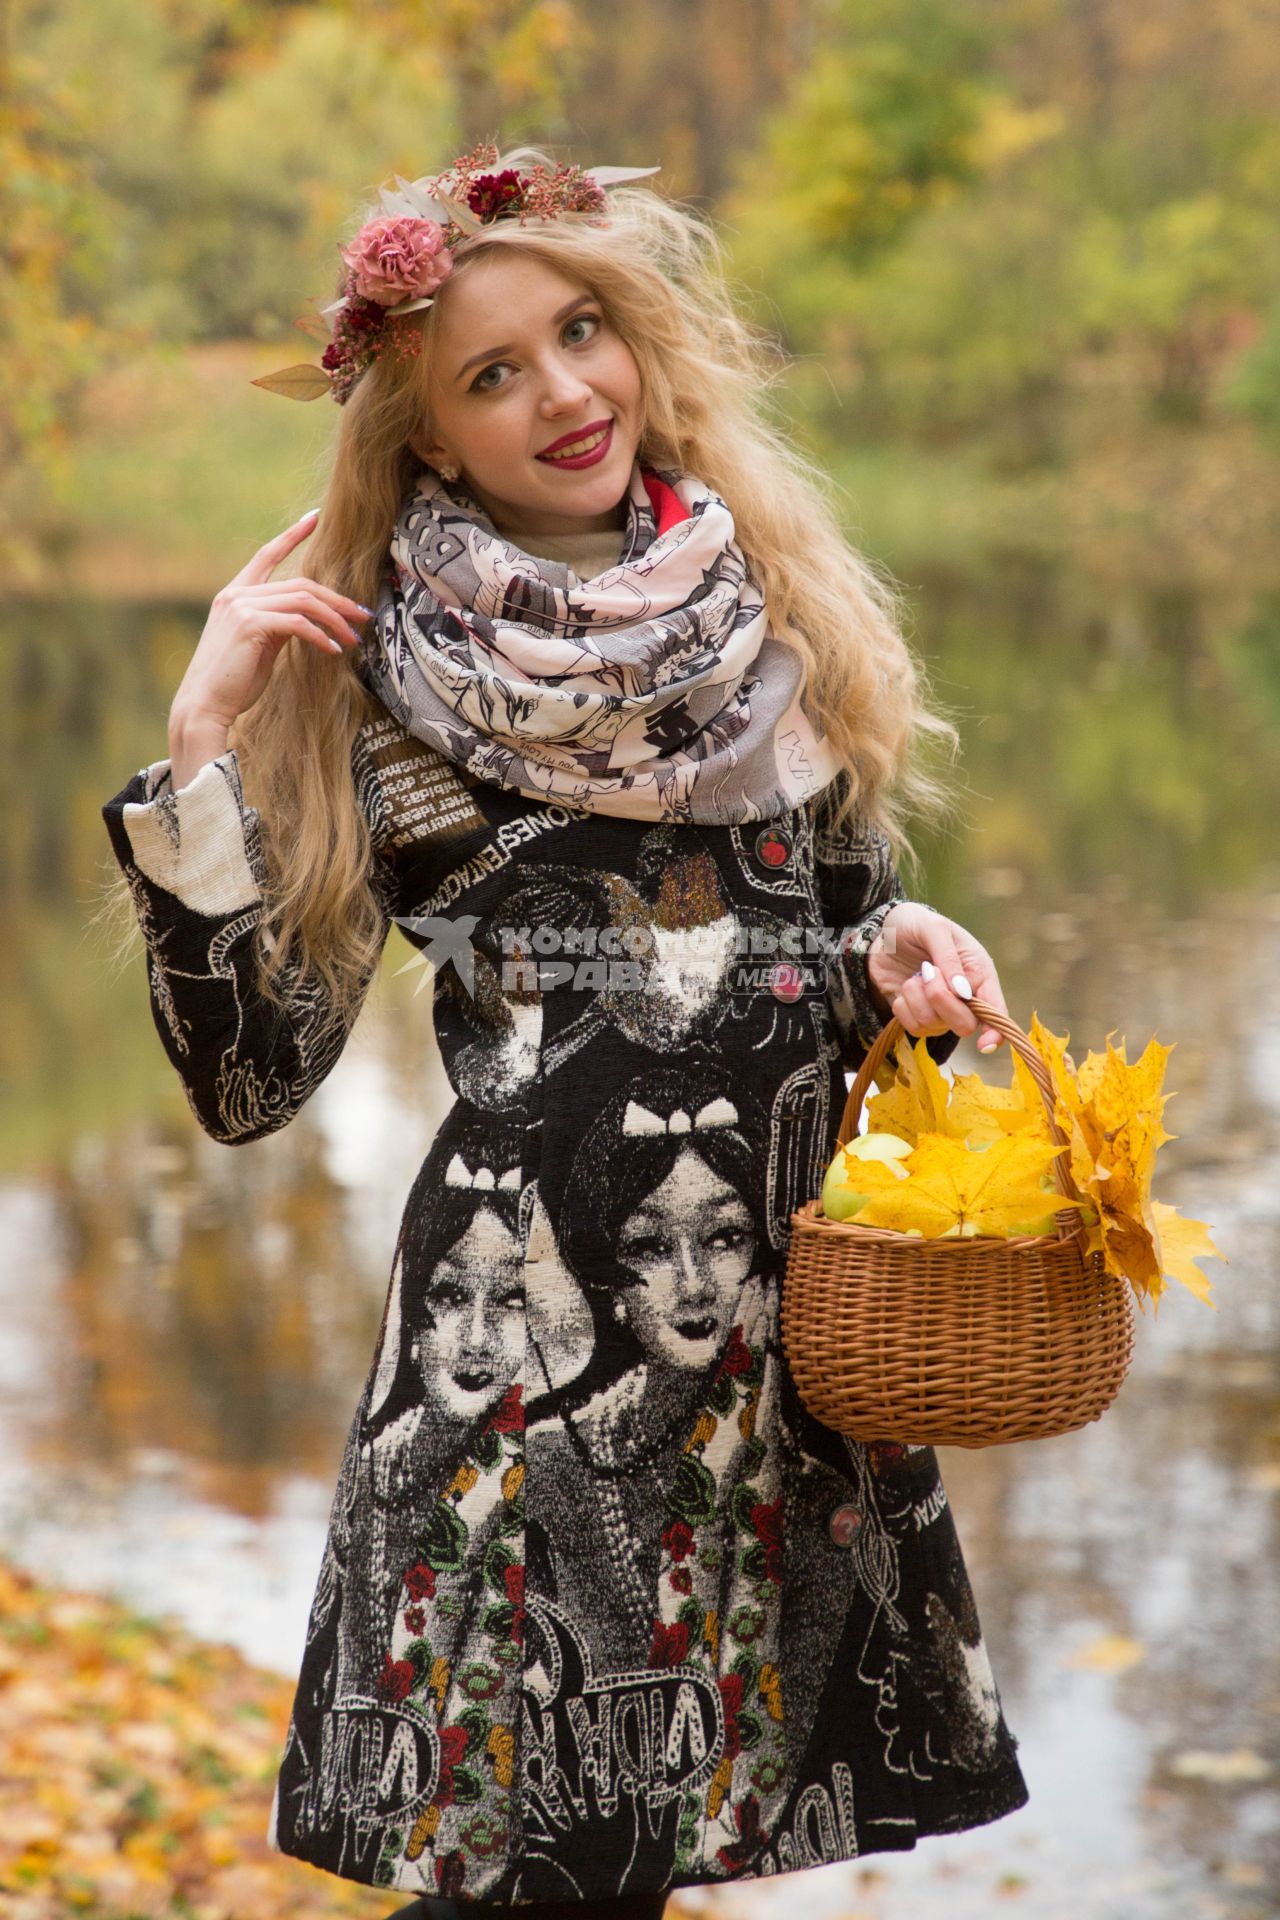 Санкт-Петербург.  Девушка во время прогулки в осеннем парке.